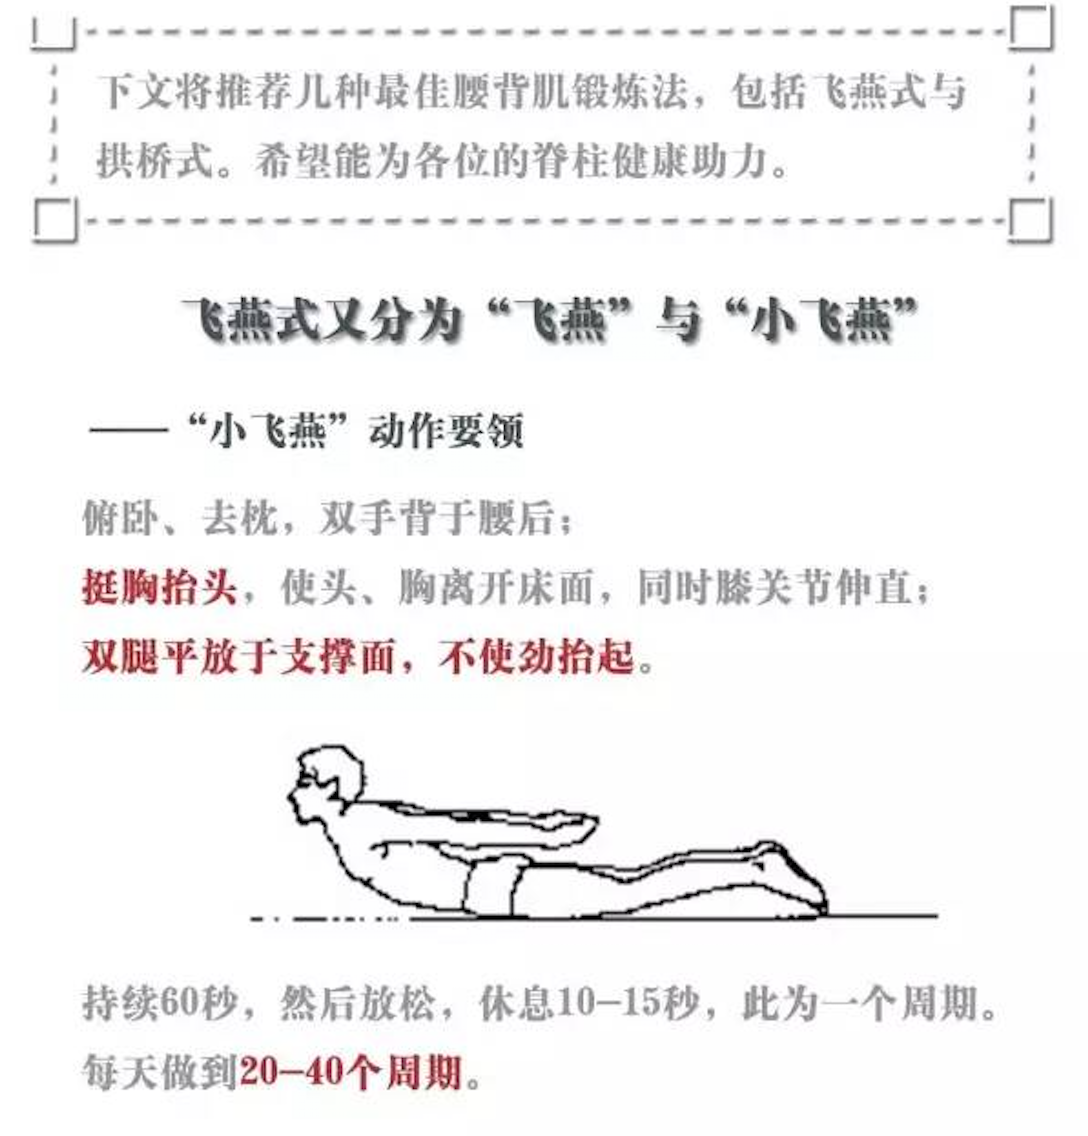 腰背肌锻炼指导(飞燕,小飞燕,拱桥五点锻炼法) 